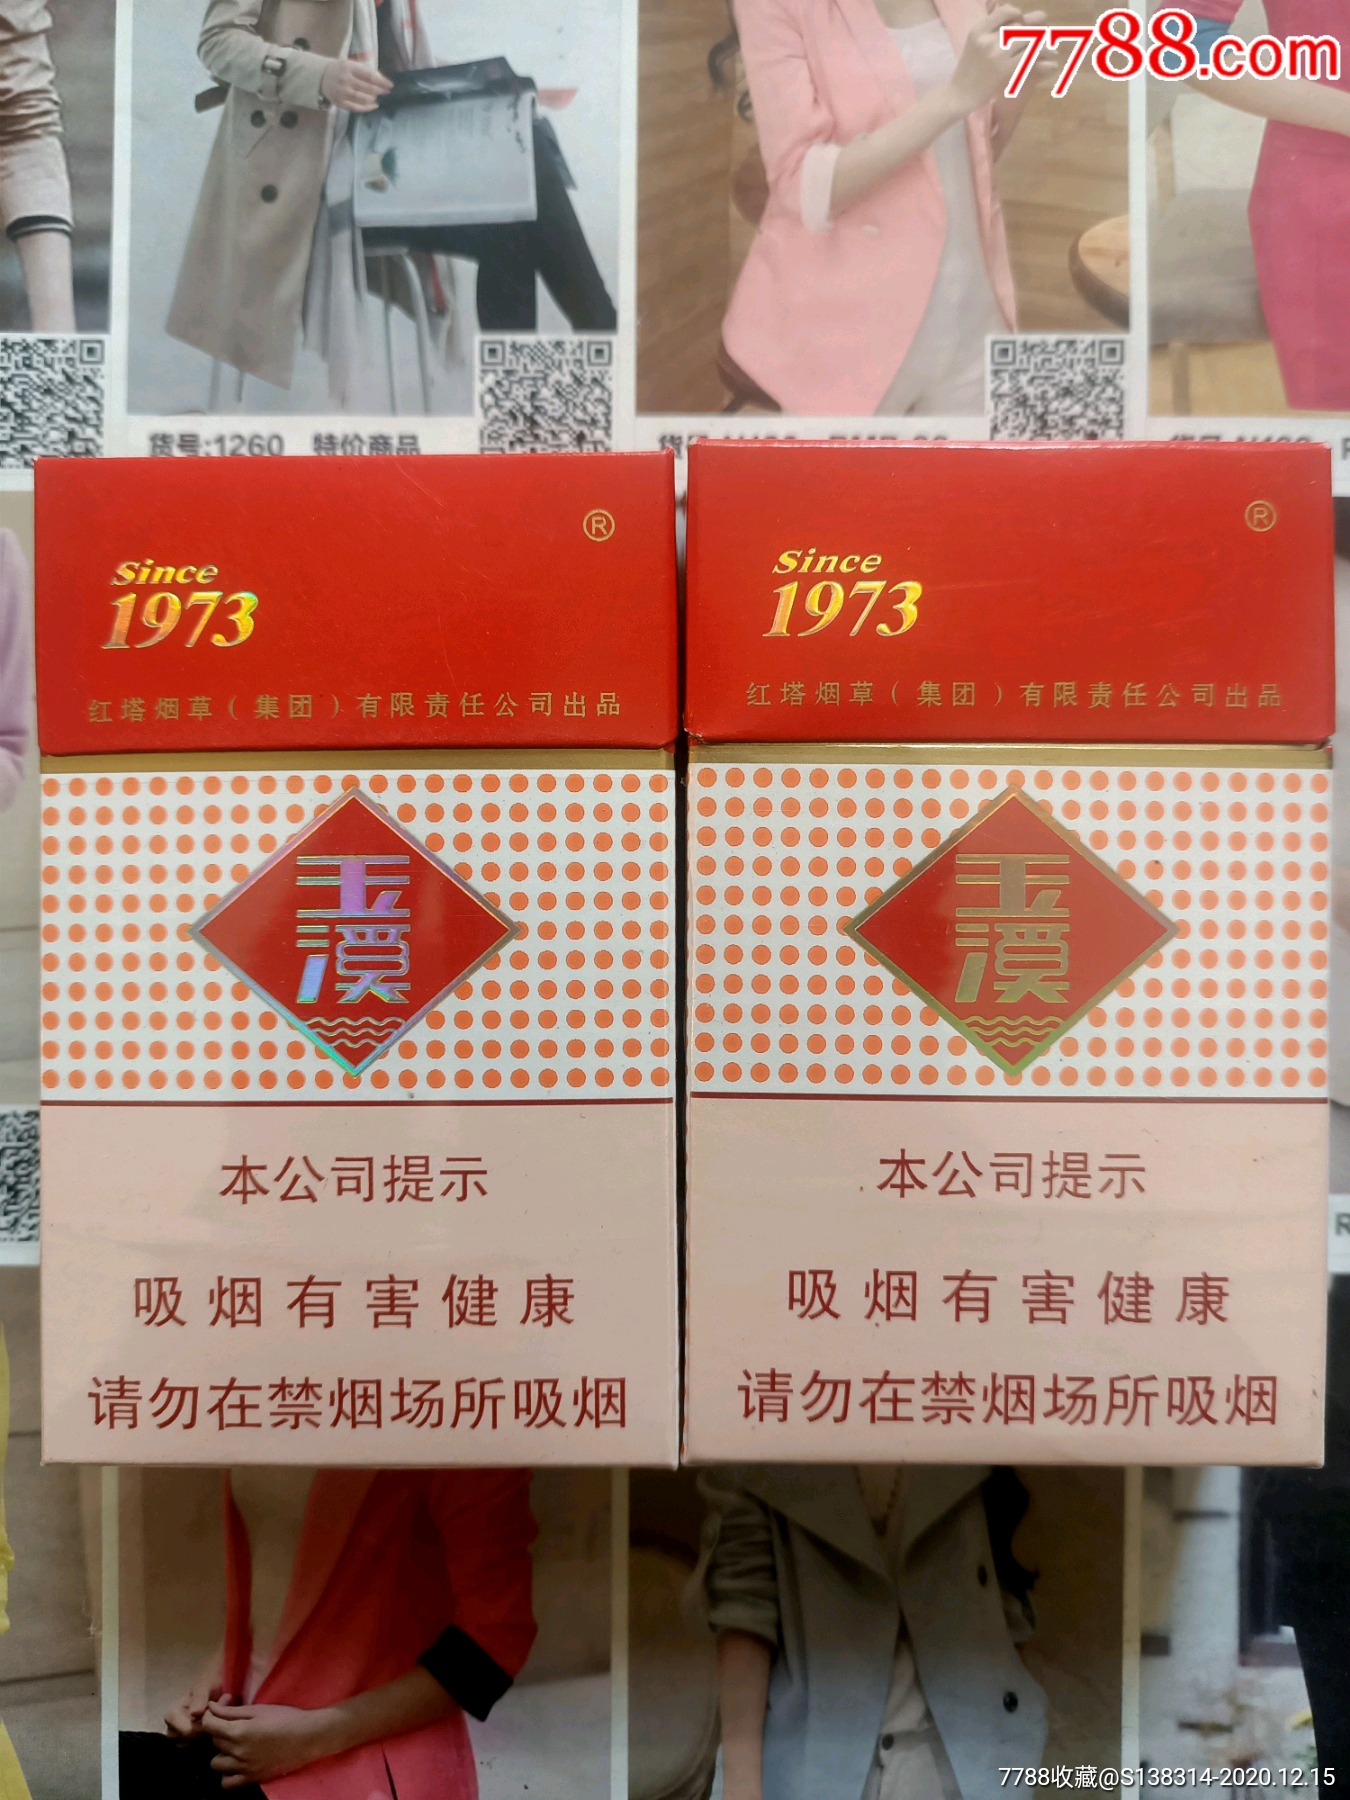 玉溪1973 - 香烟品鉴 - 烟悦网论坛